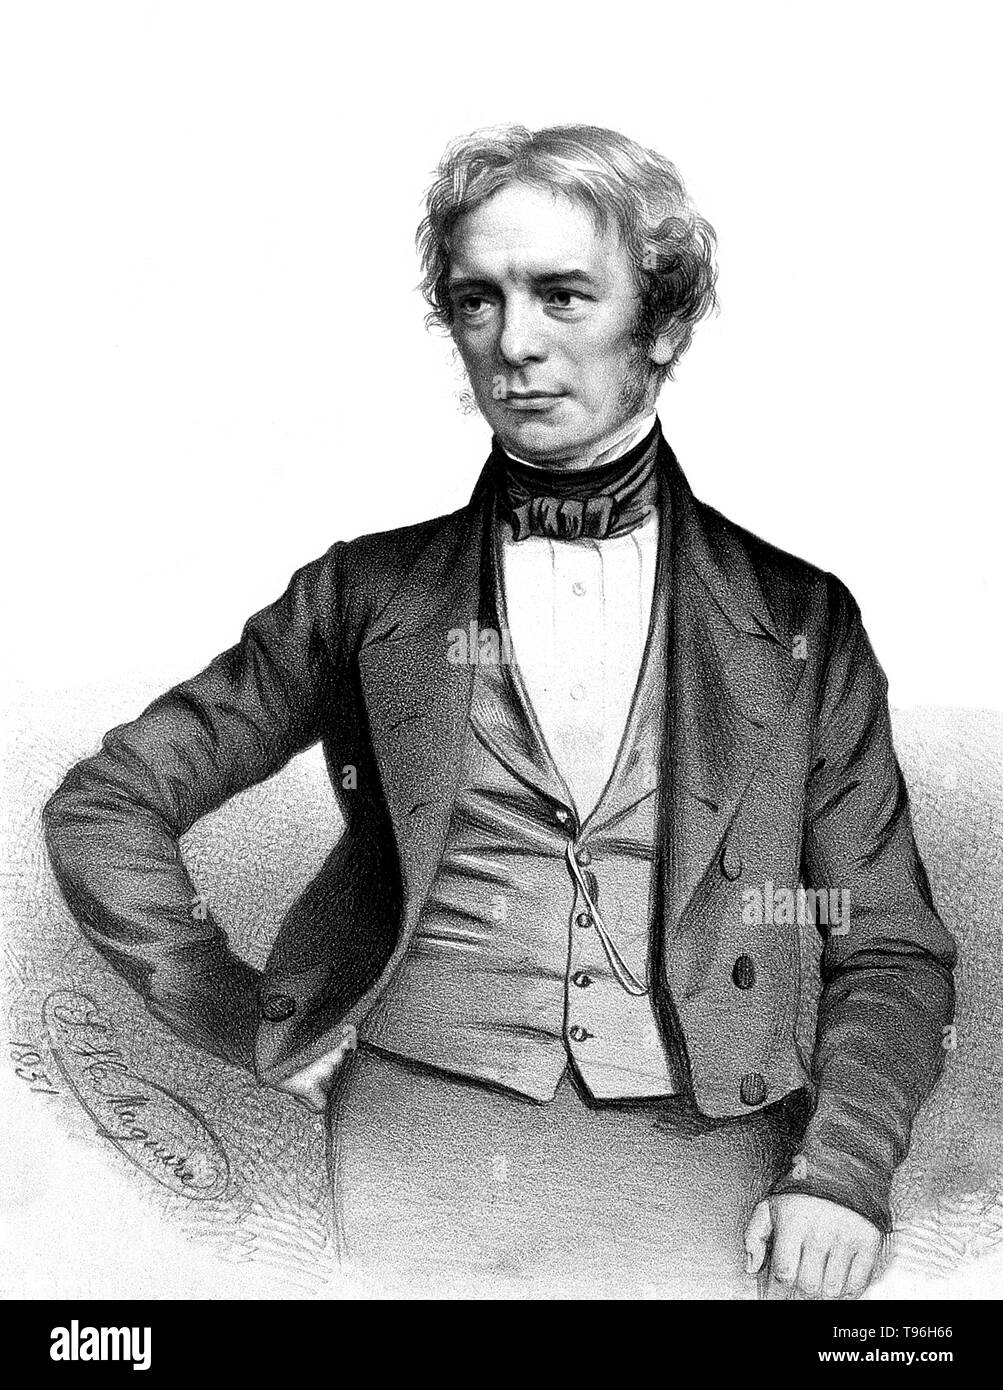 Michael Faraday (22 settembre 1791 - 25 agosto 1867) era un chimico e fisico inglese che hanno contribuito ai campi di elettromagnetismo ed elettrochimica. Faraday ha sperimentato con elettricità e magnetismo, proponendo che il magnetismo era una forza circolare. Egli è anche noto per la scoperta di magnetico di rotazione ottica, induzione elettromagnetica, inventare la dinamo, perfezionando il becco Bunsen, e formulazione della seconda legge di elettrolisi. Autore di "manipolazione chimica', a Faraday è stato auto-formazione e ha contribuito ai campi dell'elettromagnetismo ed elettrochimica dopo un apprentic Foto Stock